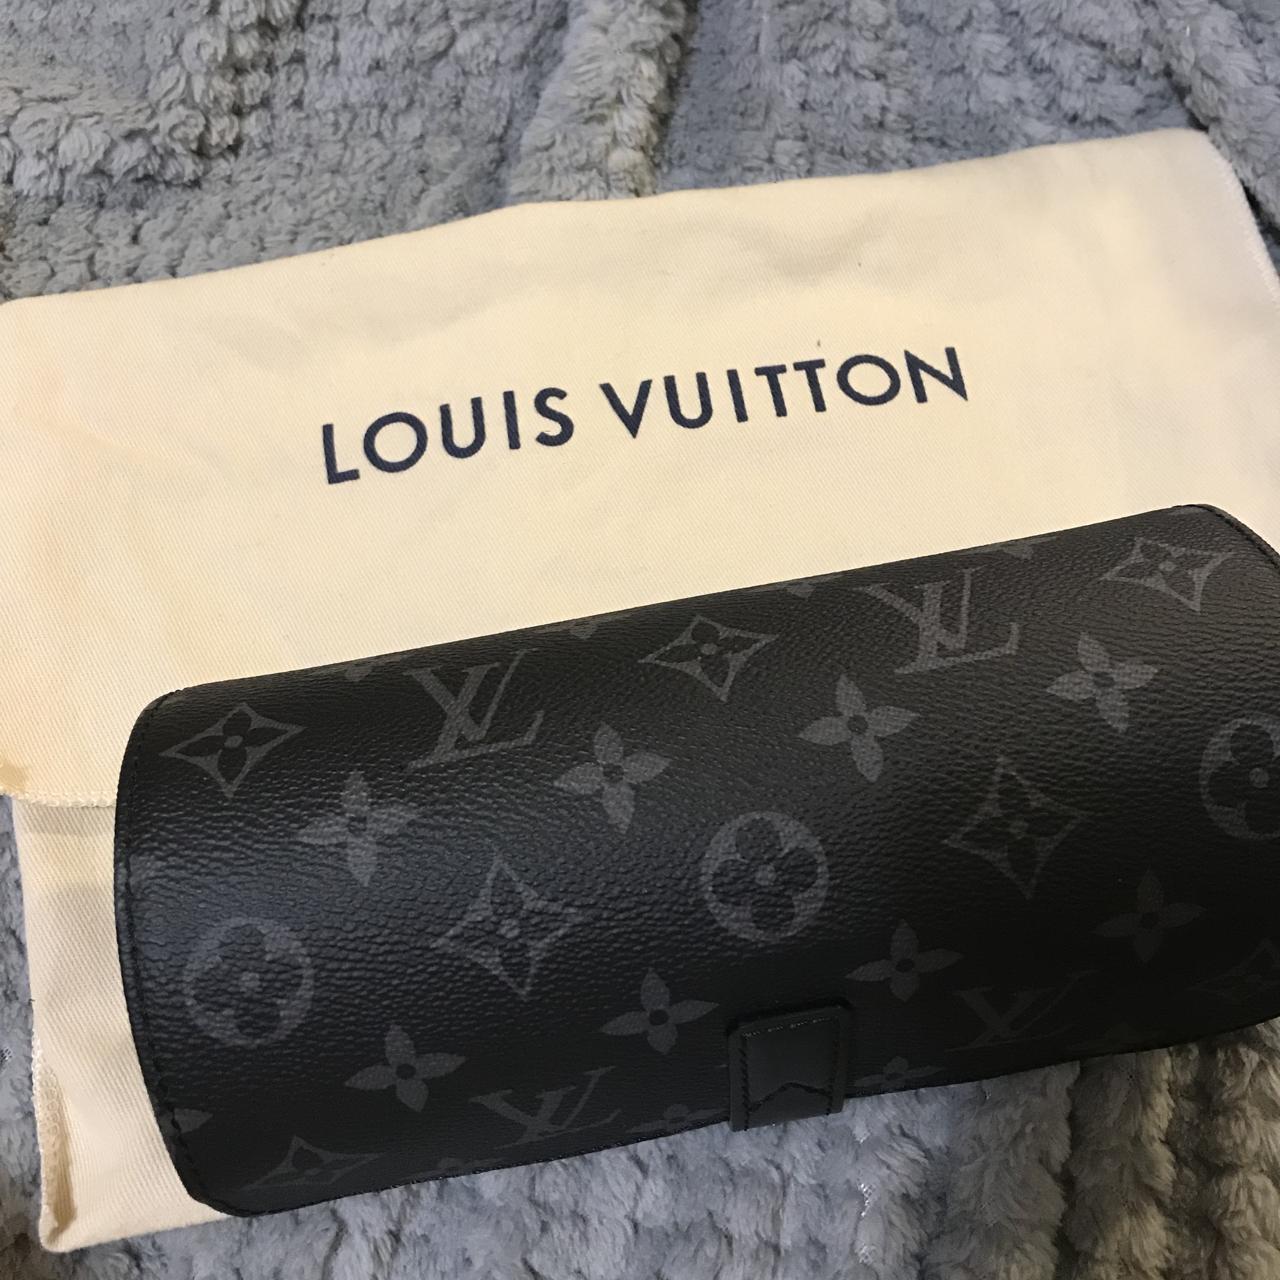 Louis Vuitton 2017 Monogram Eclipse 3 Watch Case - Black Travel,  Accessories - LOU166688